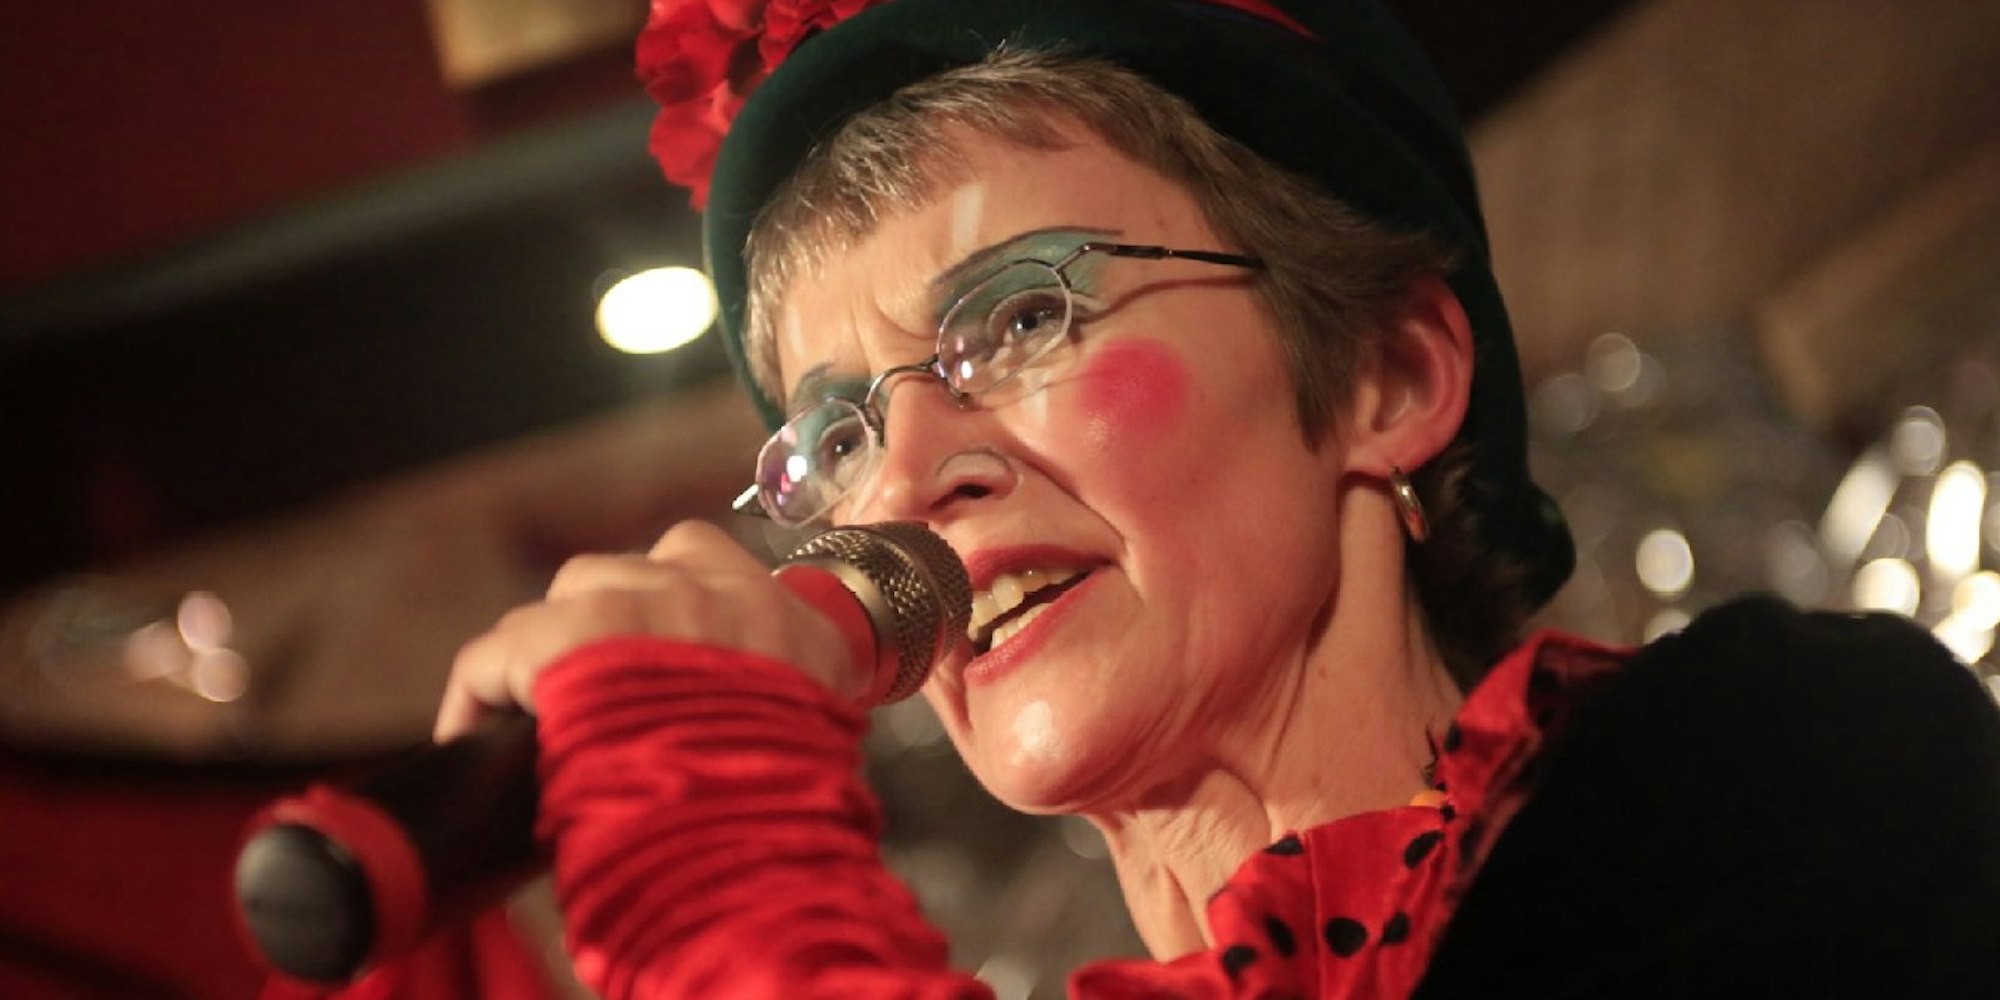 Annette Schmelter-Lamsfuß schreibt kölsche Lieder und Texte. Seit 2013 ist die ehemalige Lehrerin als Sängerin und Musikerin der Band „Möschtijall“ unterwegs - eine kölsche Wortschöpfung, um einen Spatz zu bezeichnen, der angeblich wie eine Nachtigall singen kann. Die Liedermacherin, die auch schon mal reimend in die Karnevalsbütt steigt, ist eine von mittlerweile sieben Autoren, die wöchentlich im „Kölner Stadt-Anzeiger“ Texte für eine kölsche Kolumne schreiben.